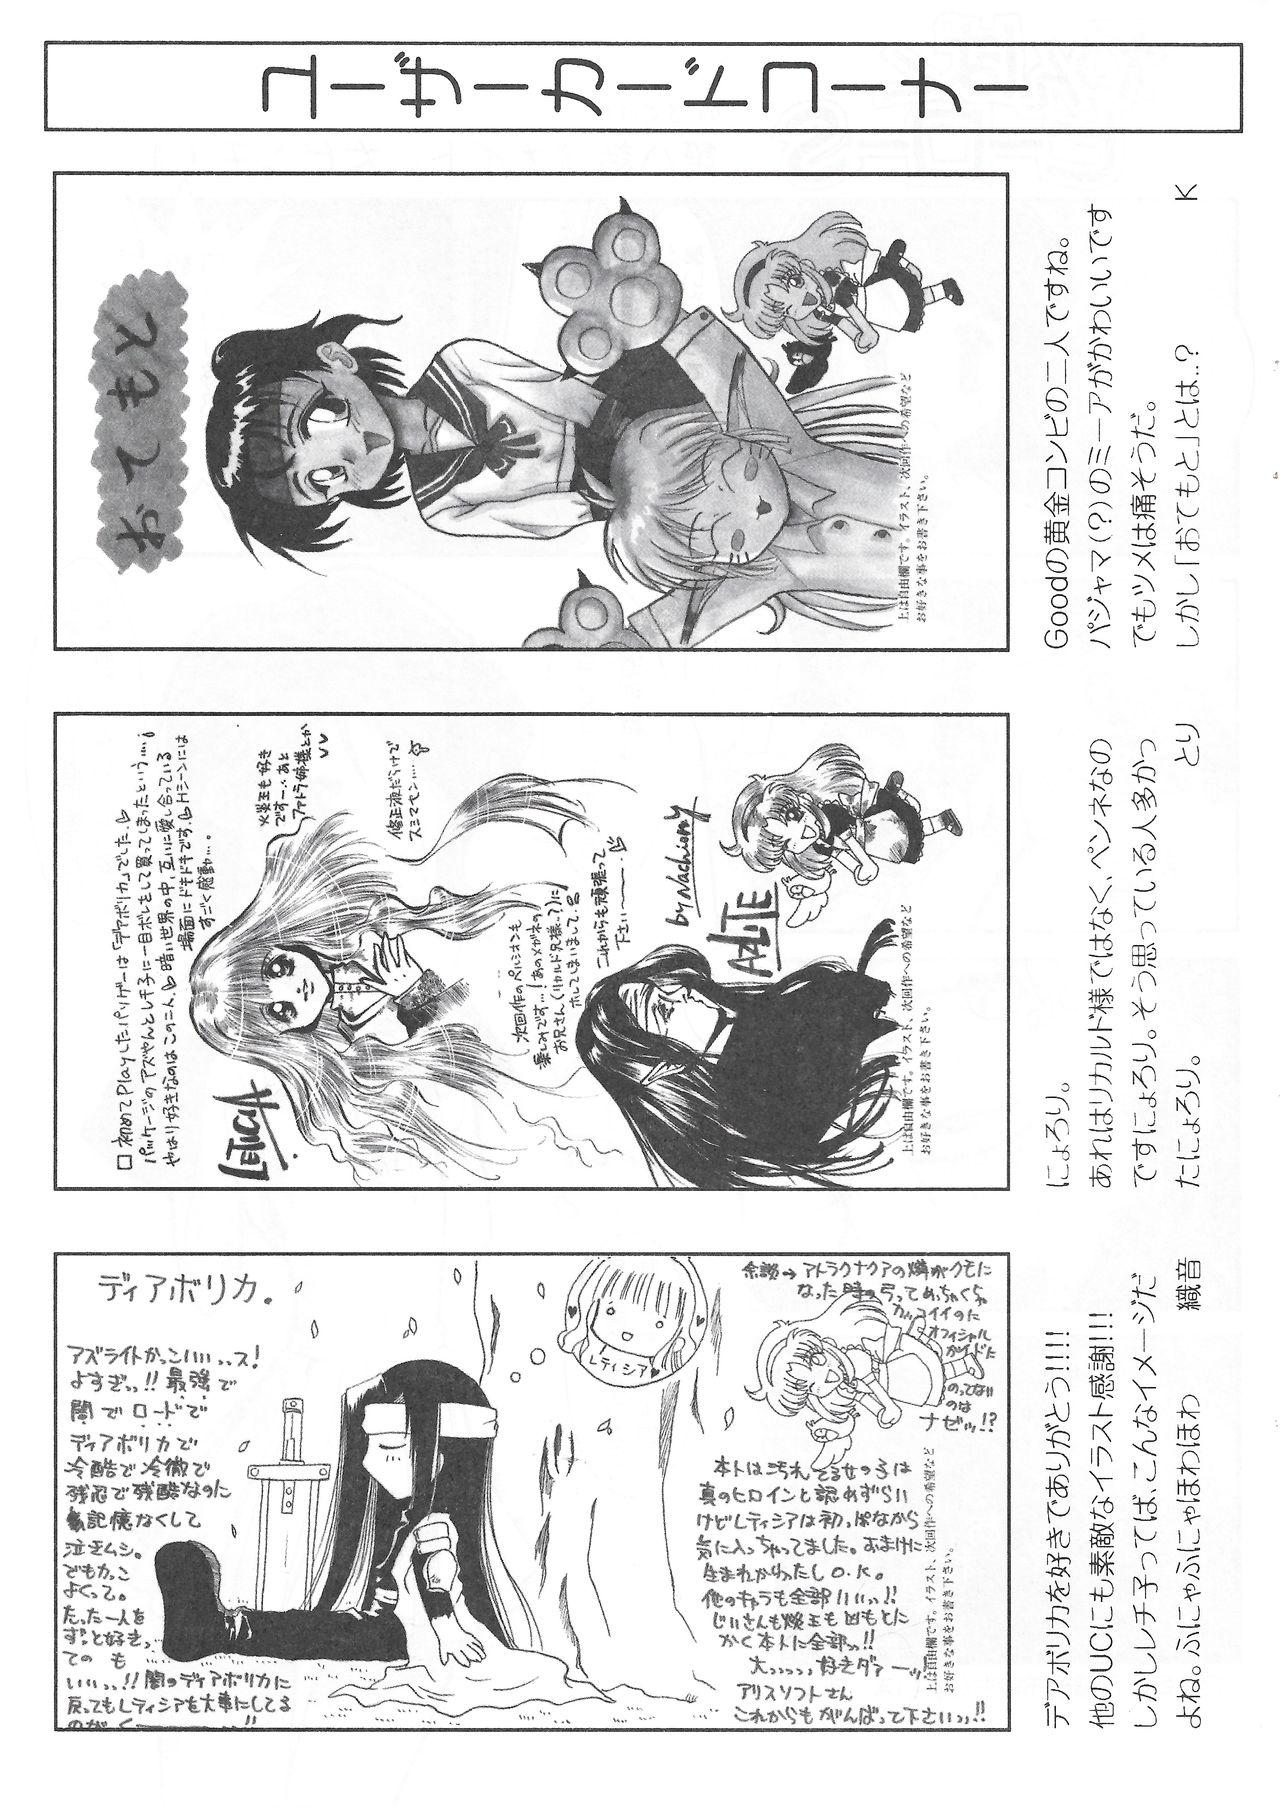 Arisu no Denchi Bakudan Vol. 11 23